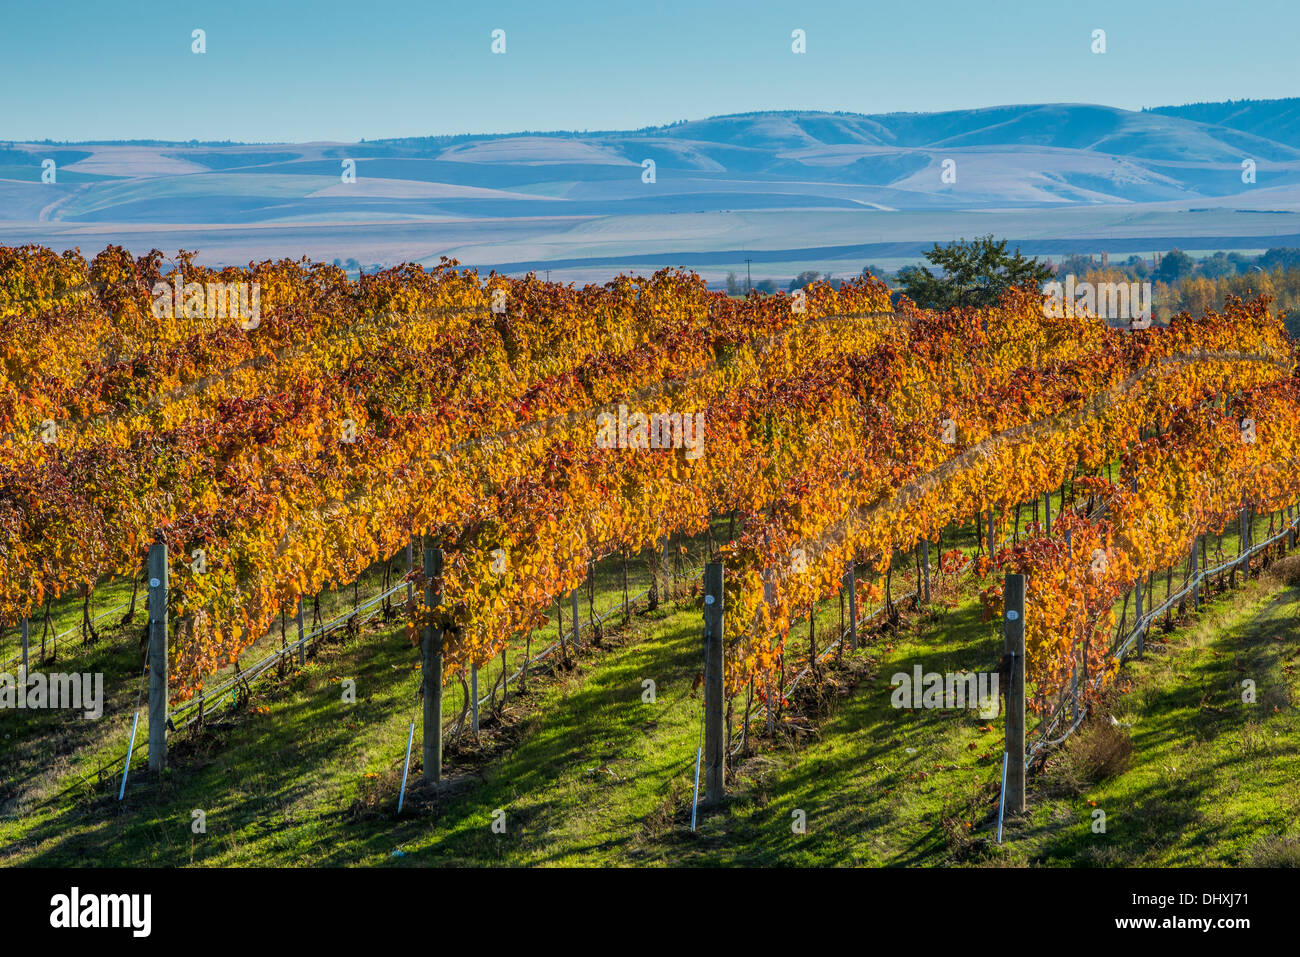 Rows of wine grape vines at Waters Vineyards; Walla Walla, Washington. Stock Photo